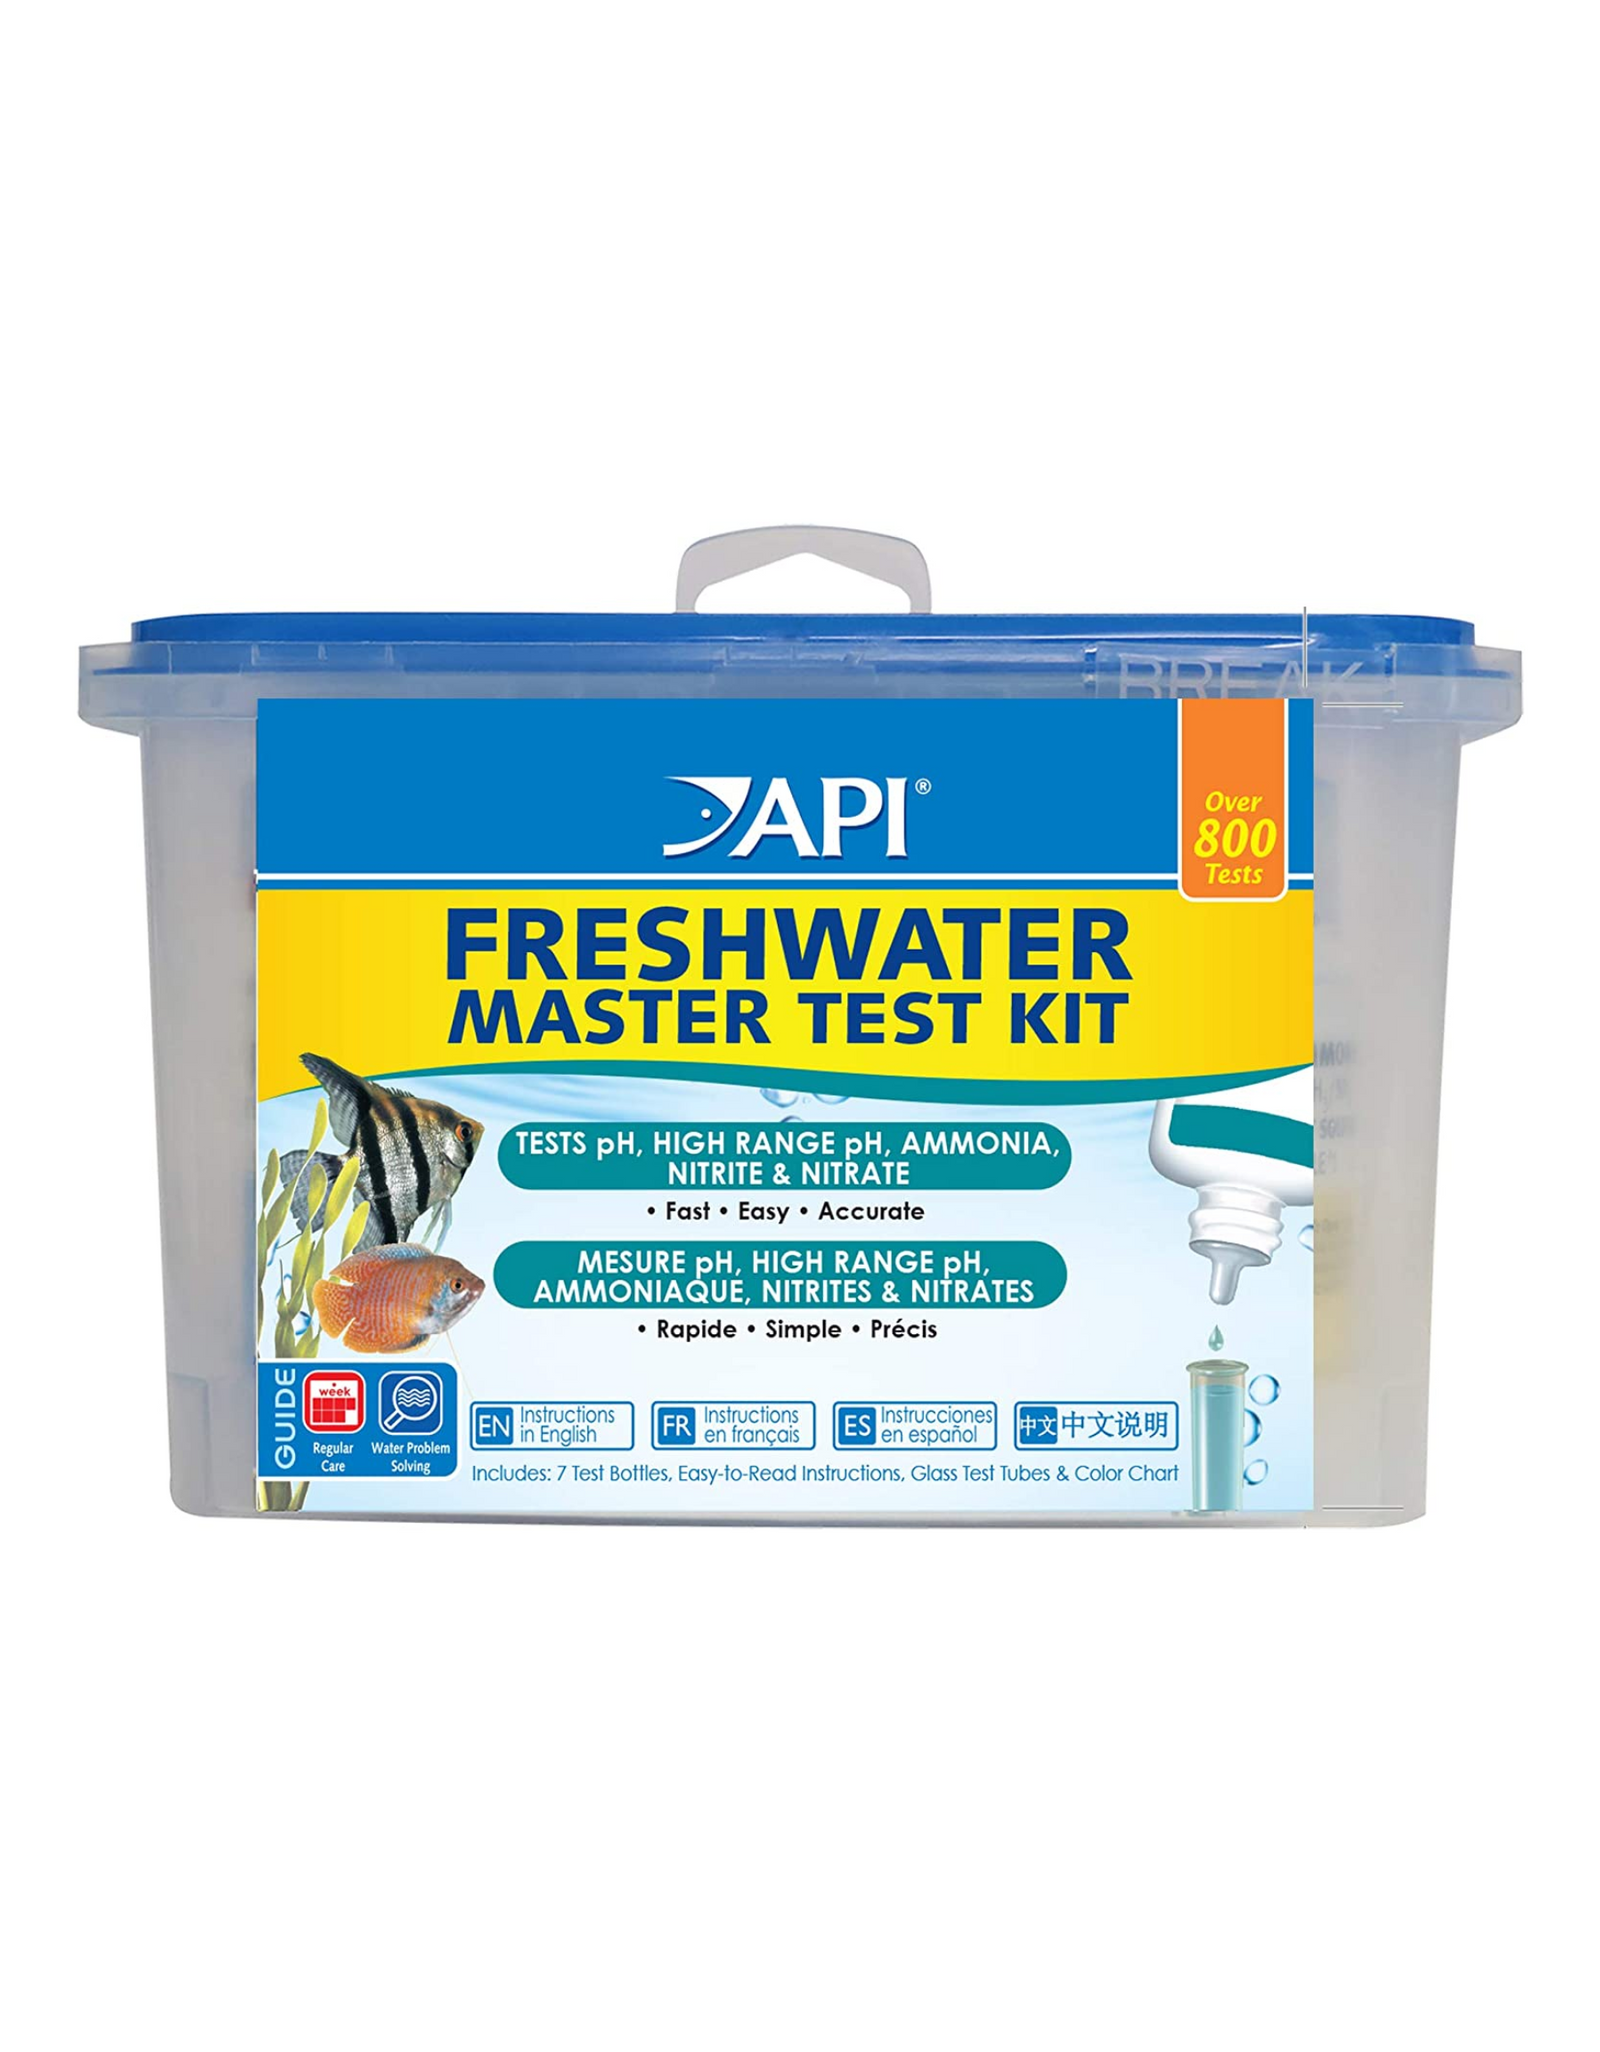 API FRESHWATER MASTER TEST KIT, Over 800-Test Freshwater Aquarium Water Master Test Kit